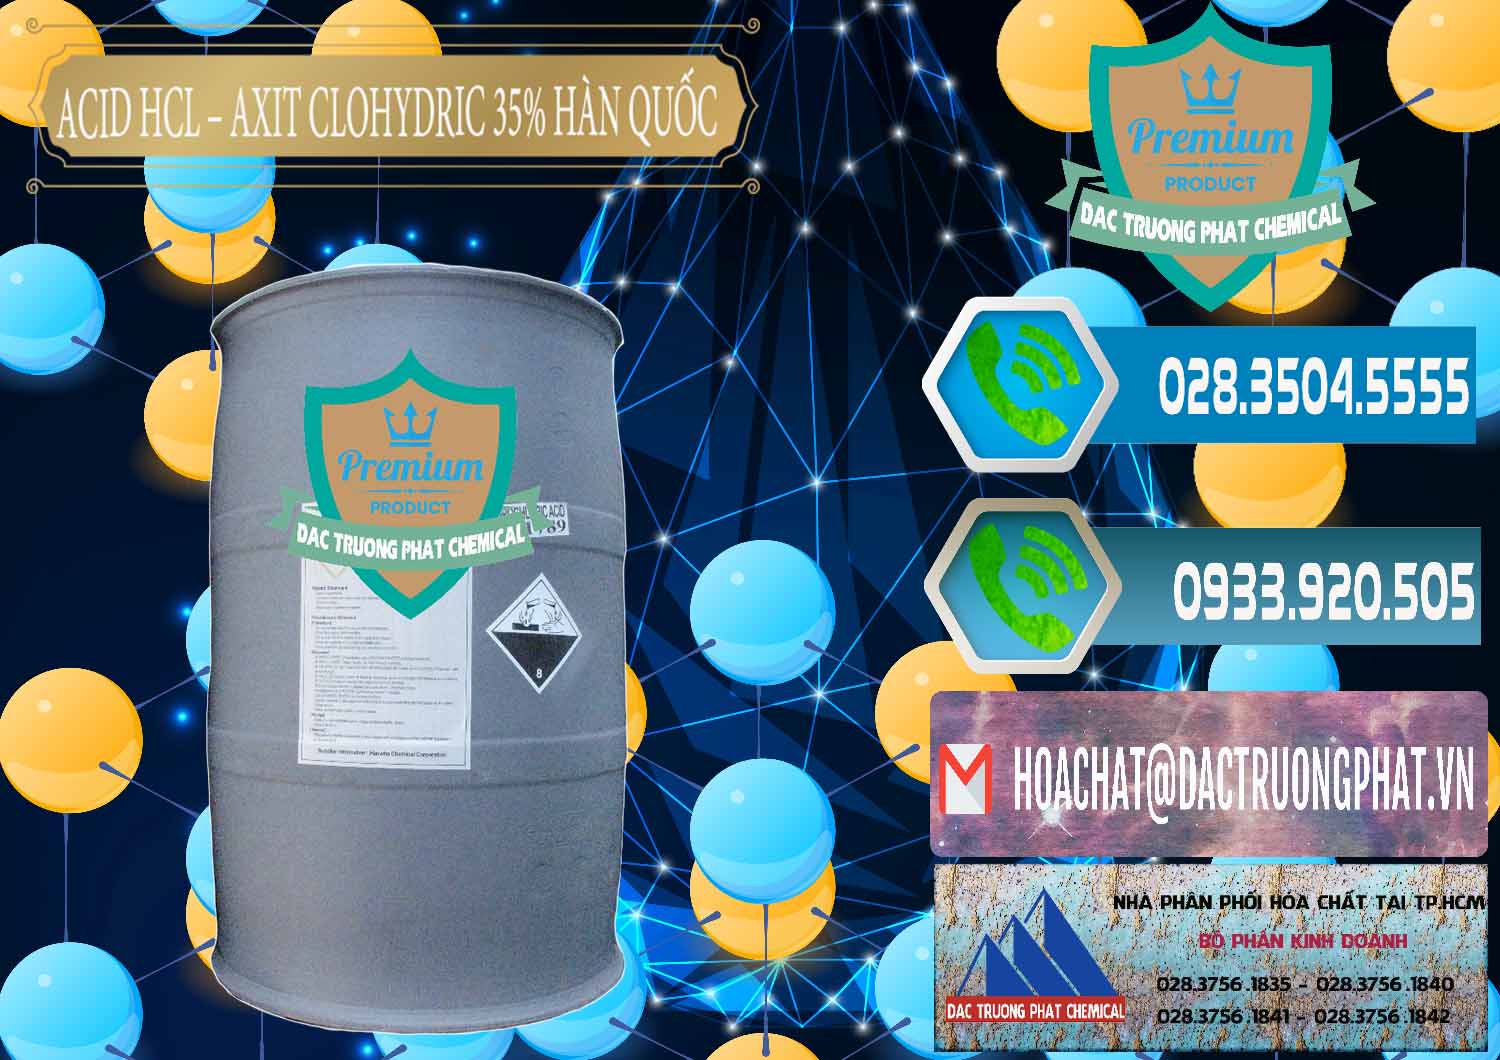 Nơi kinh doanh & bán Acid HCL - Axit Cohidric 35% Hàn Quốc Korea - 0011 - Cty phân phối - cung cấp hóa chất tại TP.HCM - congtyhoachat.net